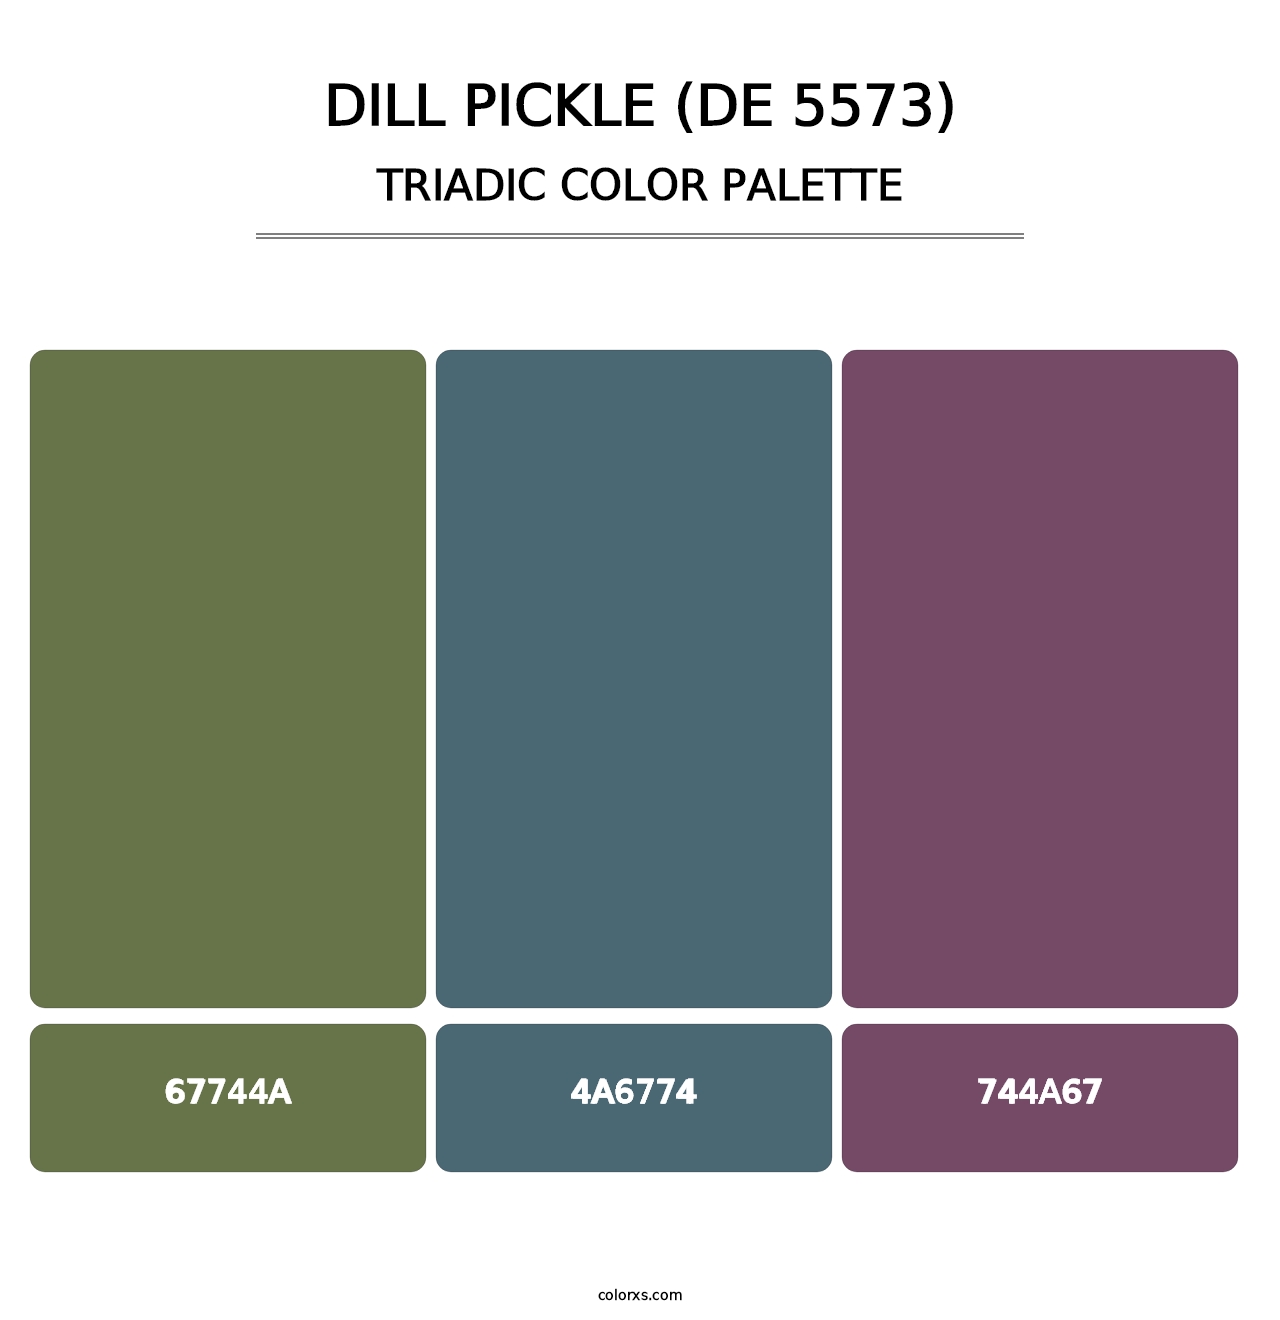 Dill Pickle (DE 5573) - Triadic Color Palette